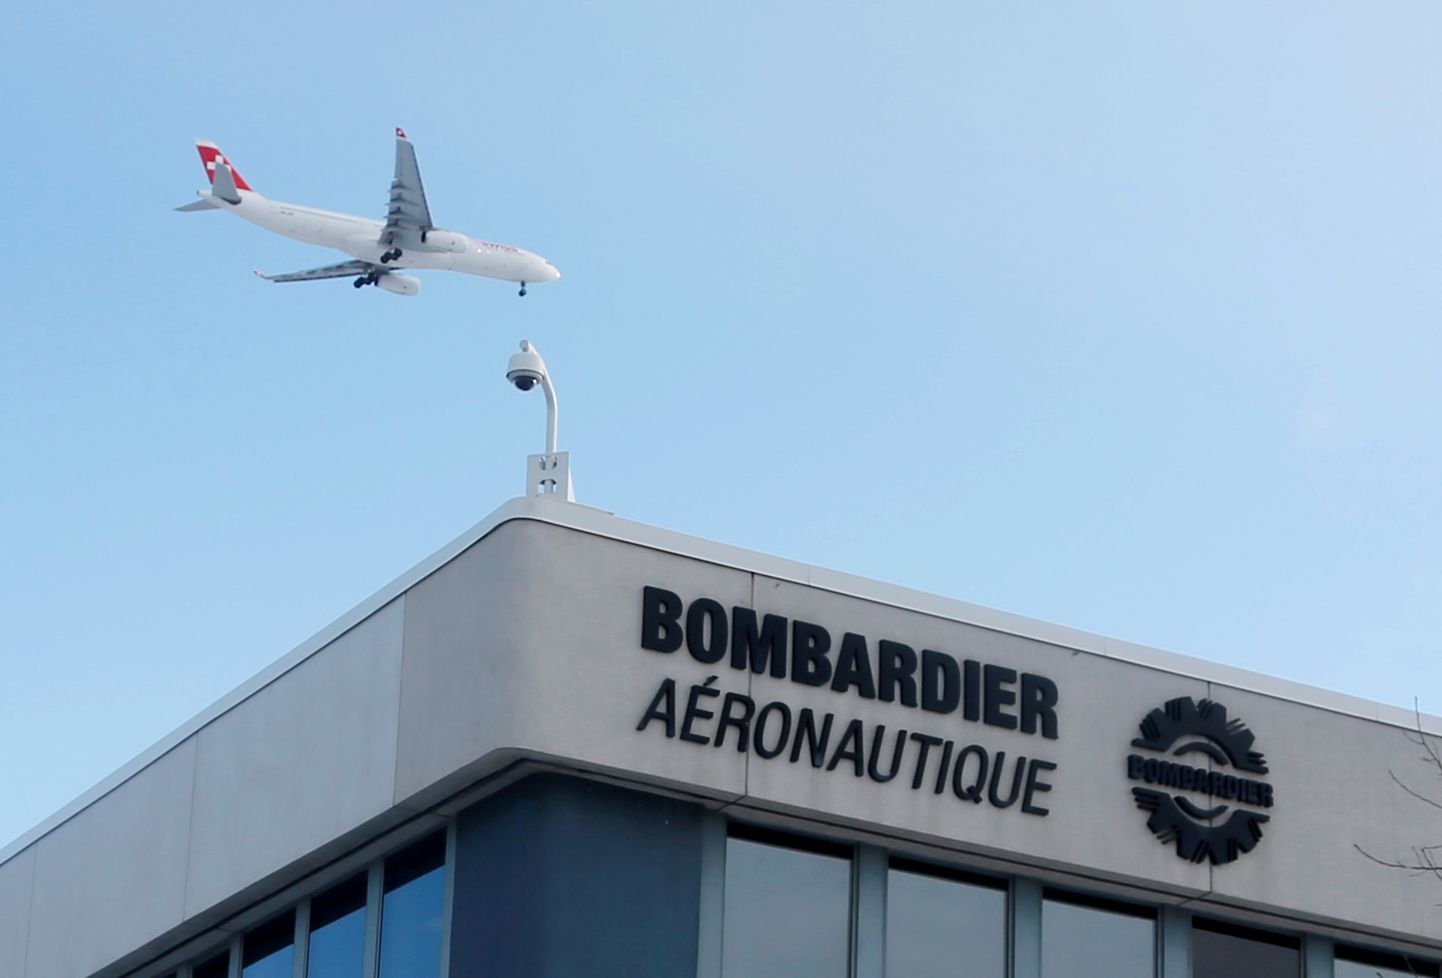 Bombardieri tehas